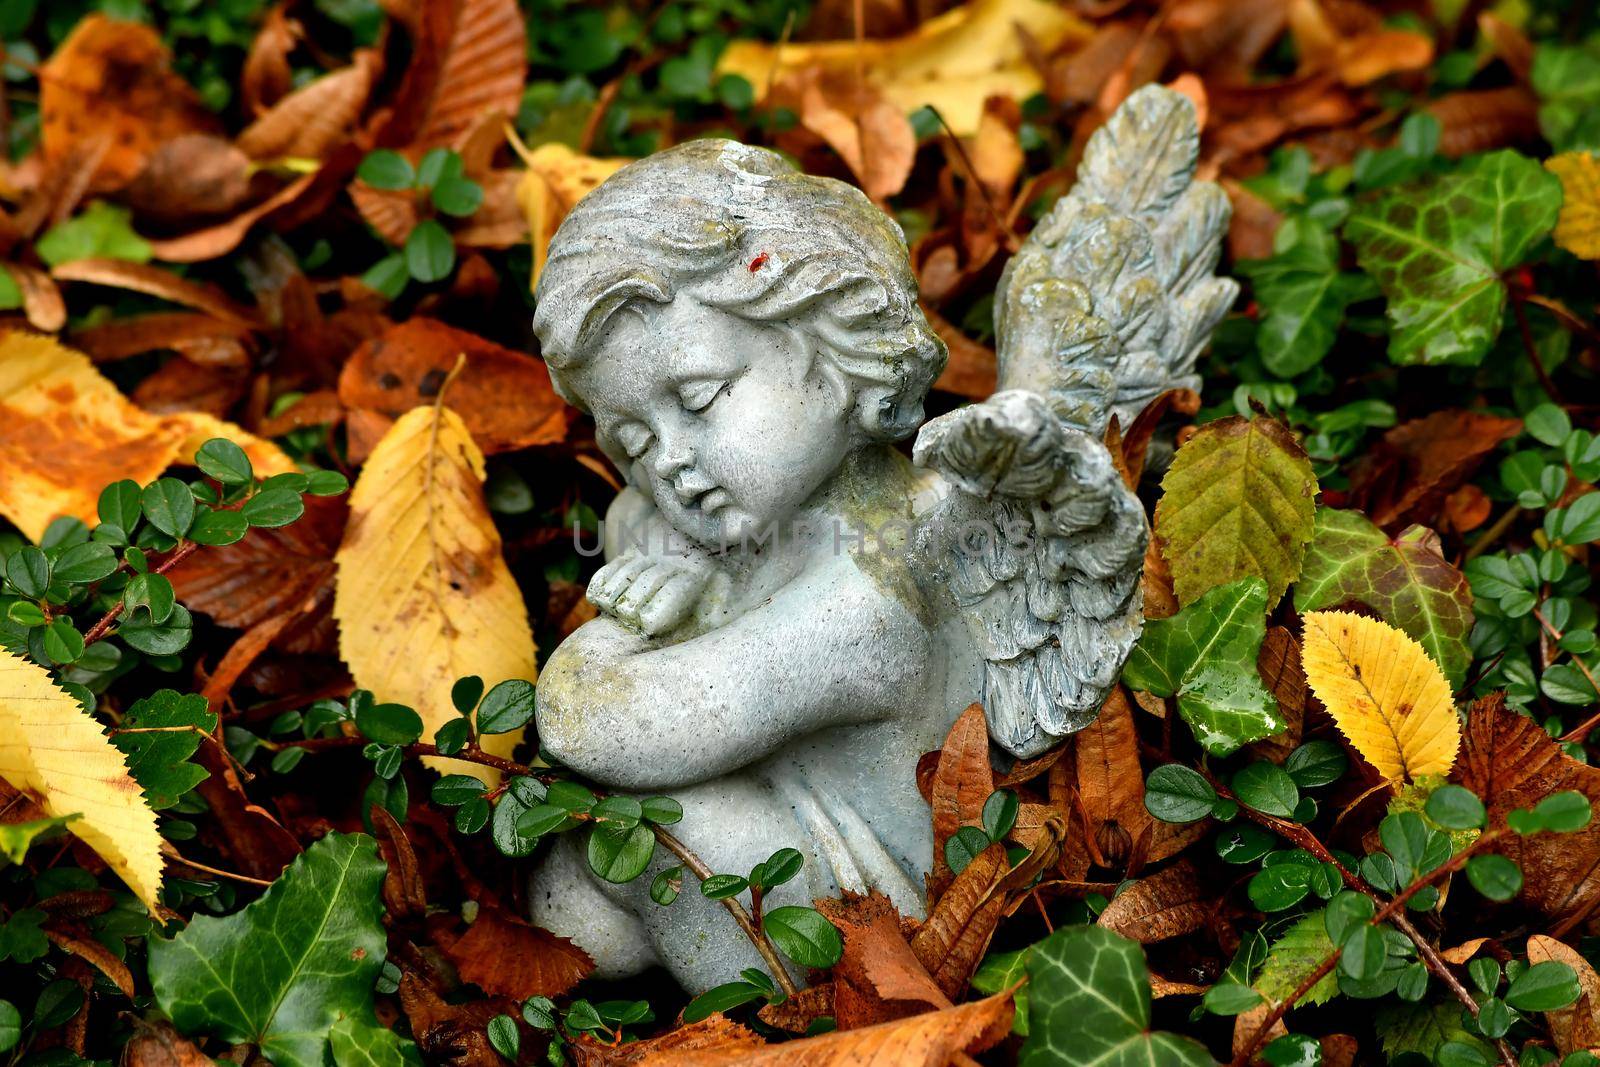 sweet sleeping angel figure on a grave in autumn with fallen leaves by Jochen